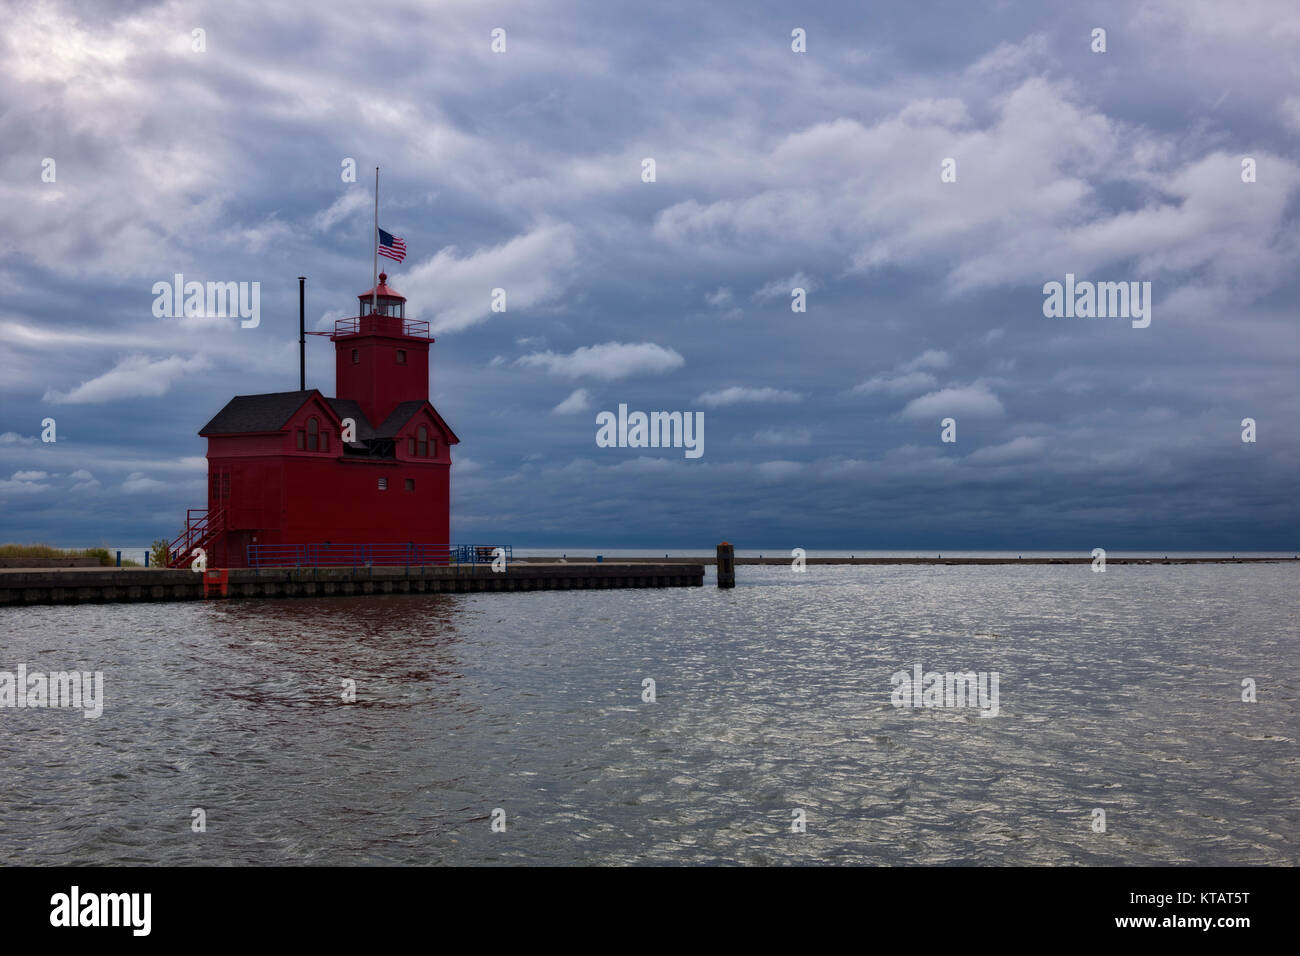 Soirée d'automne s'appuie sur la tempête Holland Harbor Lighthouse savent comme Big Red à l'entrée du chenal qui relie le lac Michigan au lac Macatawa dans Banque D'Images